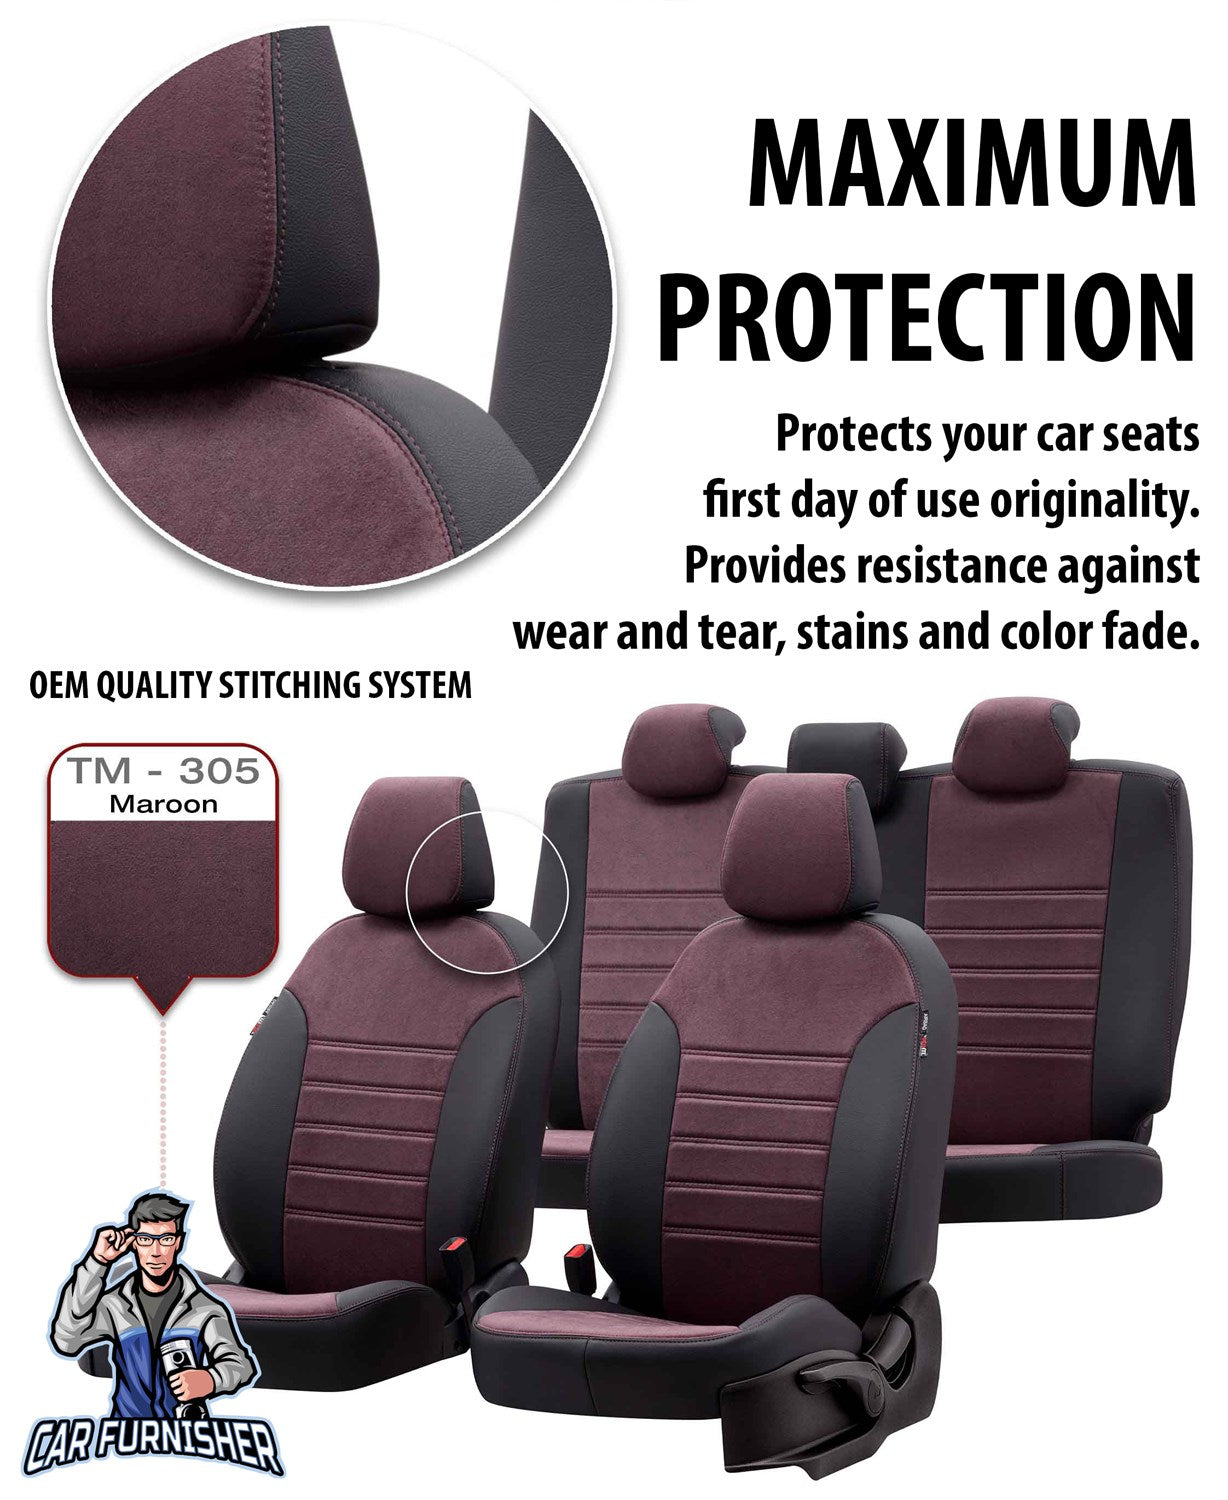 Suzuki Vitara Seat Covers Milano Suede Design Black Leather & Suede Fabric